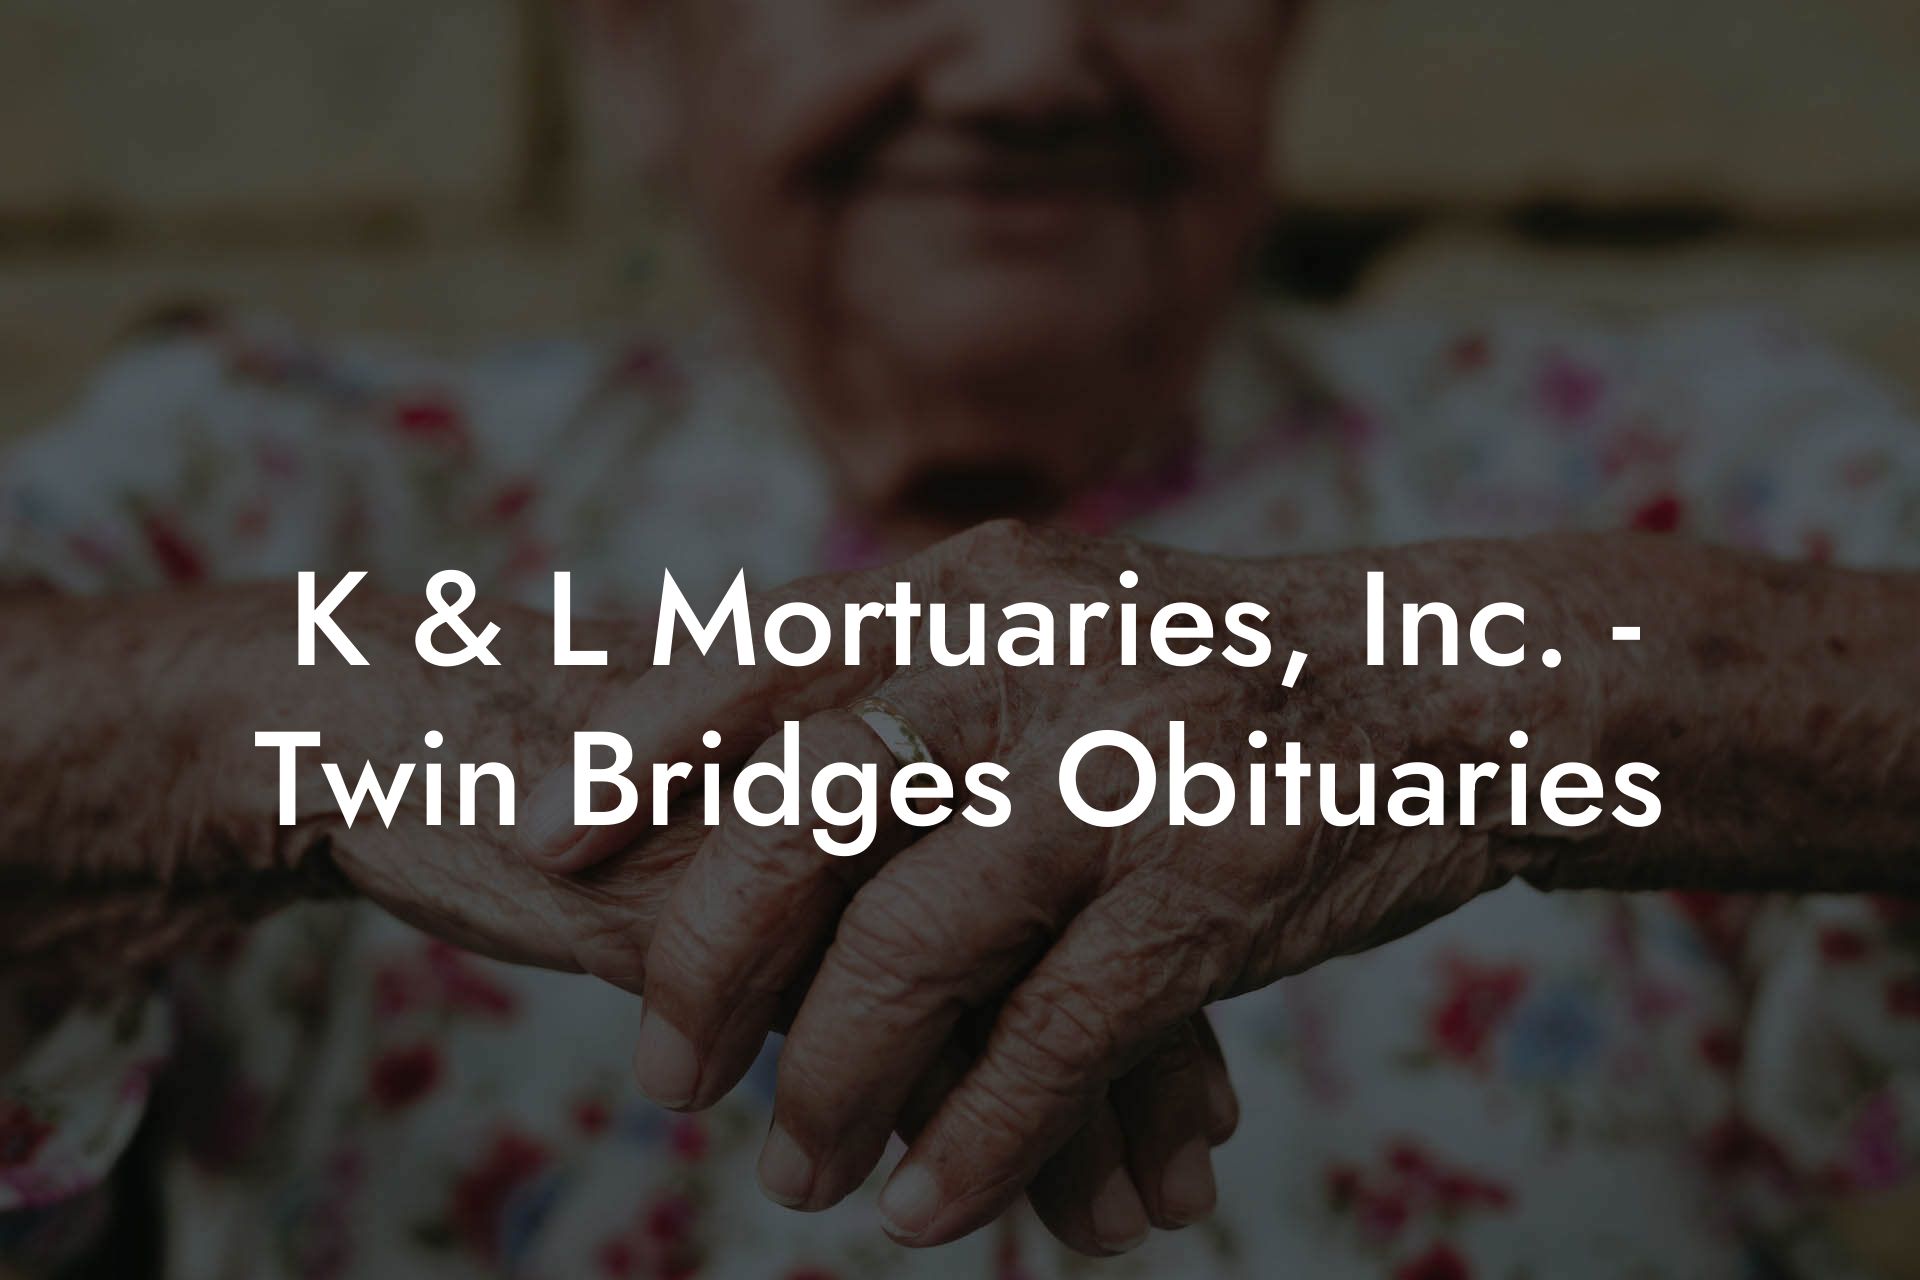 K & L Mortuaries, Inc. - Twin Bridges Obituaries